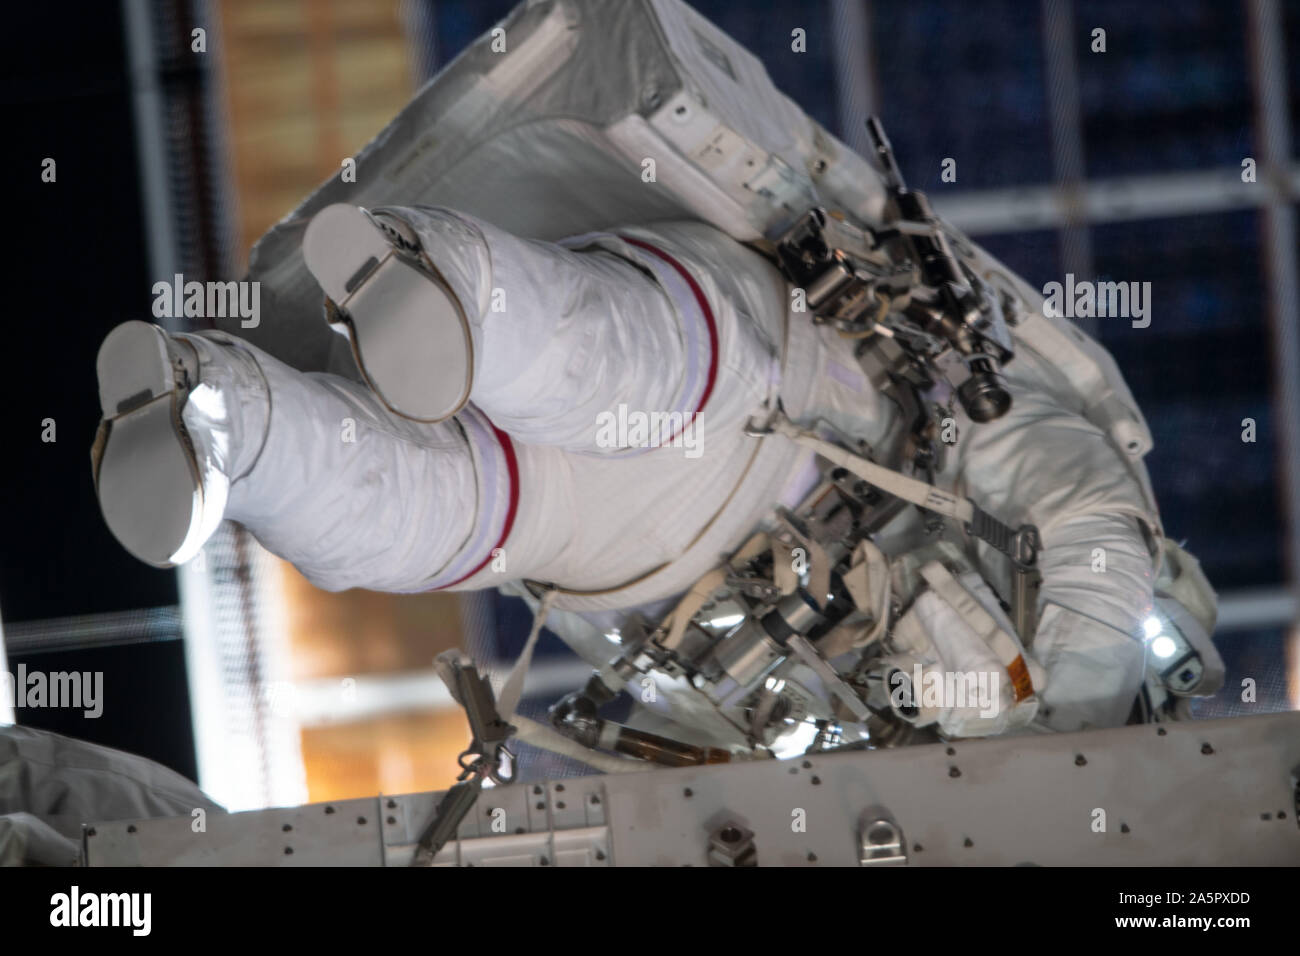 NASA-Astronaut Christina Koch während ihren vierten Spacewalk und die erste mit mitastronaut Jessica Meir Oktober 18, 2019 in der Erdumlaufbahn. Die Astronauten hielt die erste alle weiblichen spacewalk zu eine defekte Batterie Entladung Einheit, nicht aktiviert Ersetzen der früheren Installation der neuen Lithium-Ionen-Akkus. Stockfoto